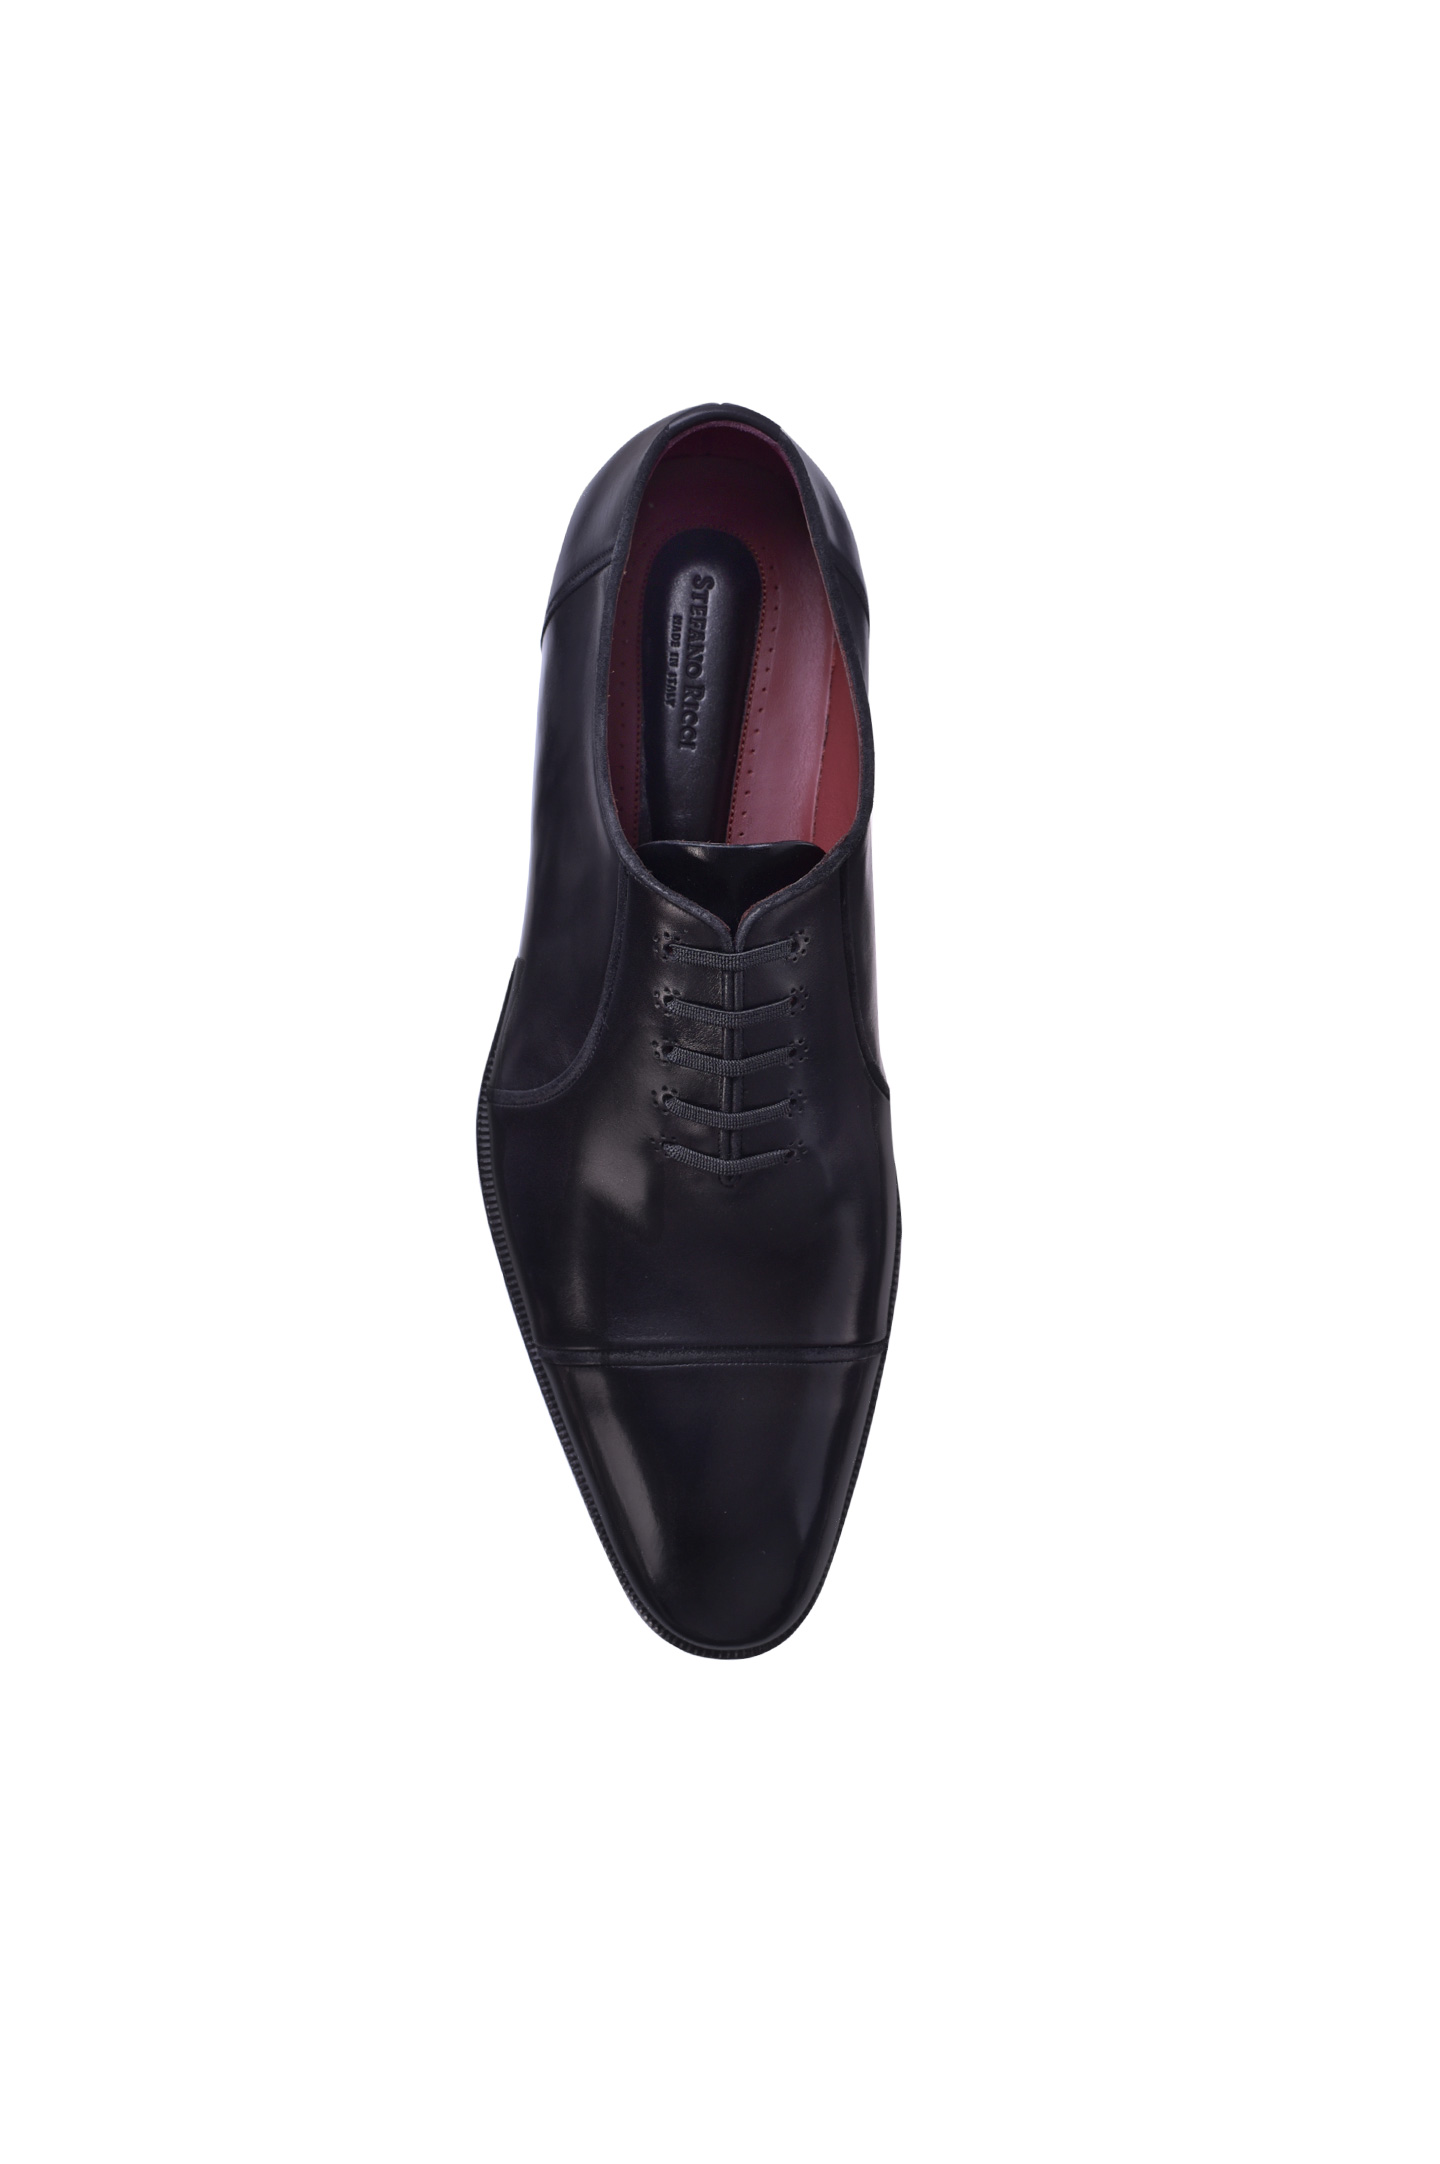 Туфли STEFANO RICCI UN02 C6322 VSSD, цвет: Черный, Мужской